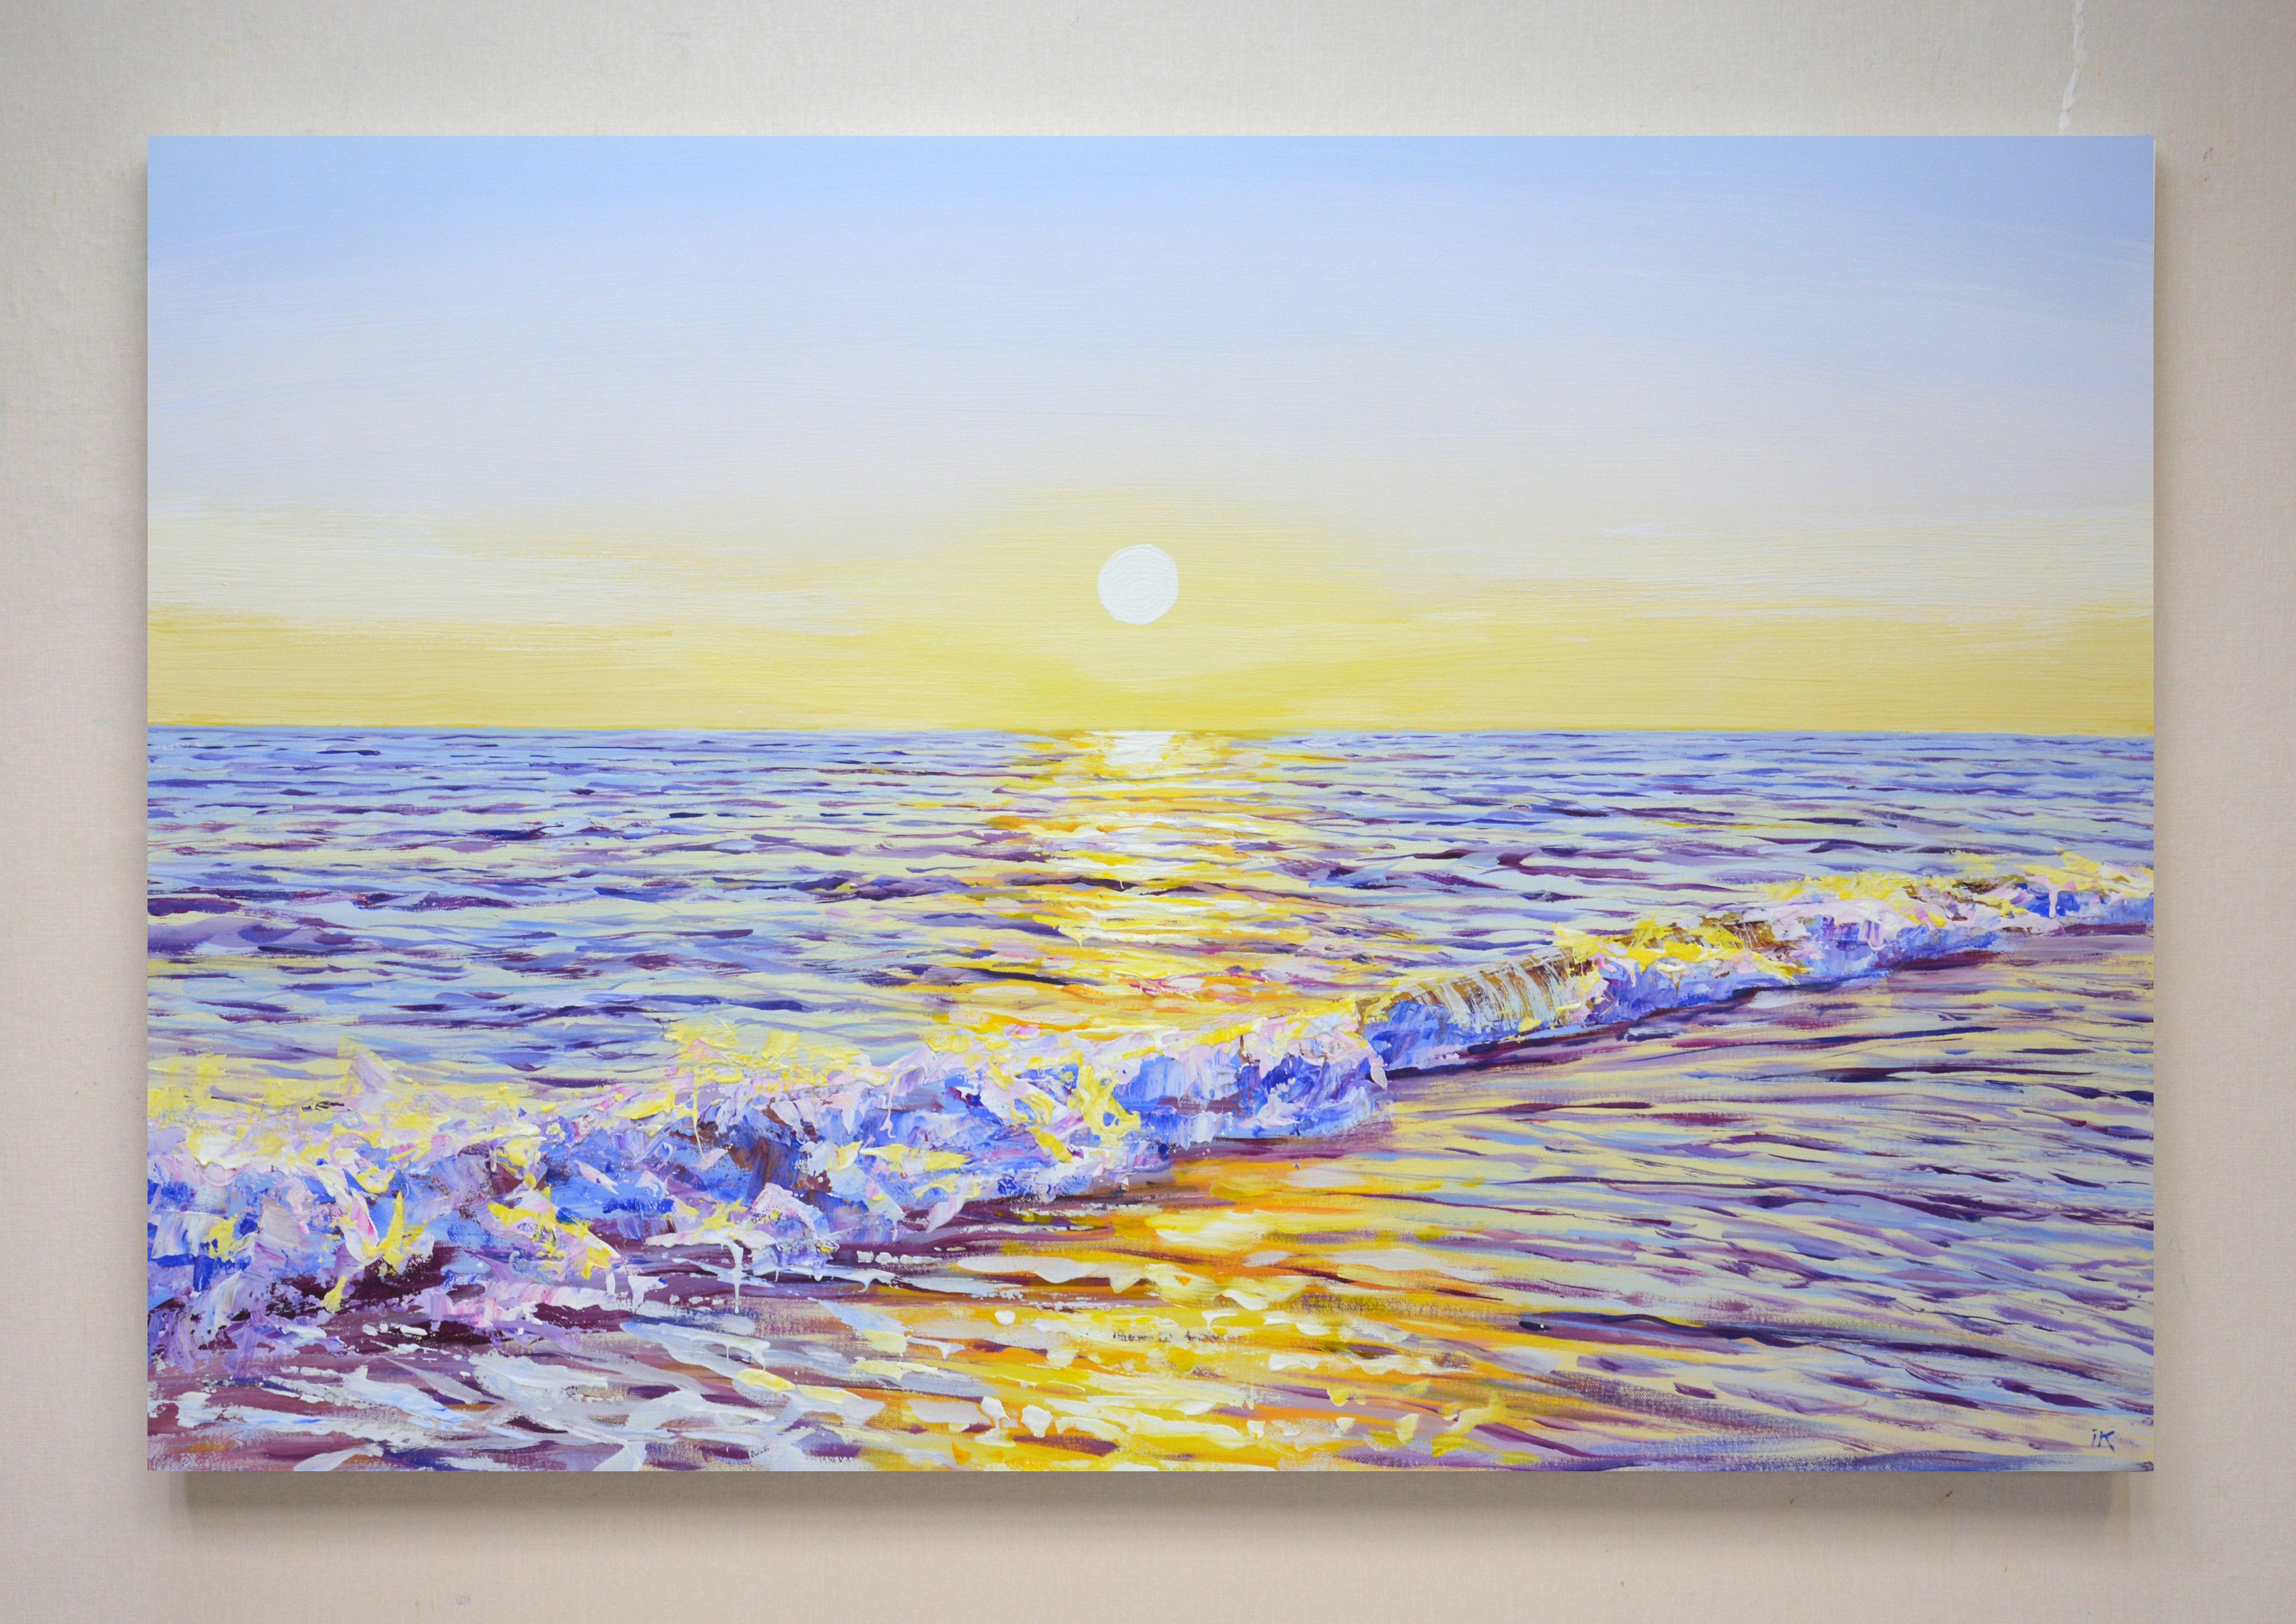 Coucher de soleil magique. Ocean, peinture, acrylique sur toile - Réalisme Painting par Iryna Kastsova